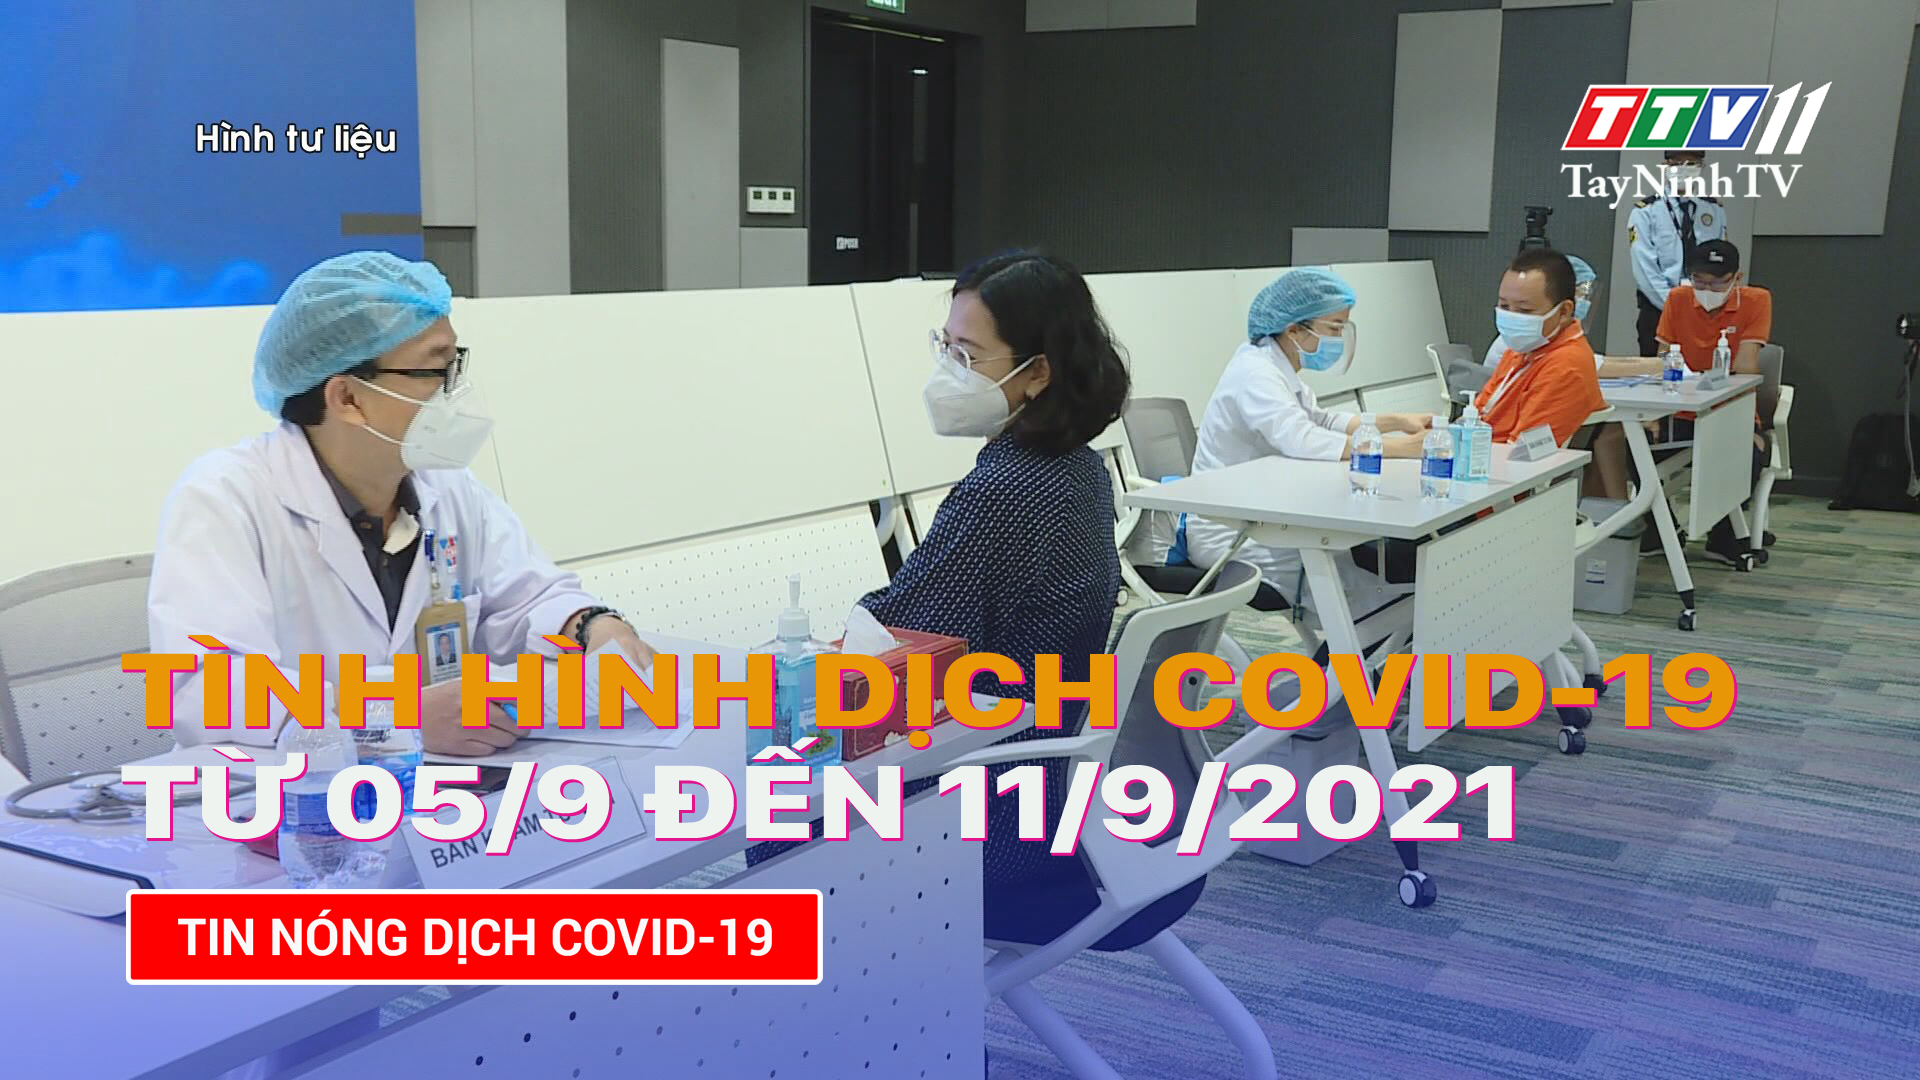 Tình hình dịch Covid-19 từ 05/9 đến 11/9/2021 | TayNinhTV